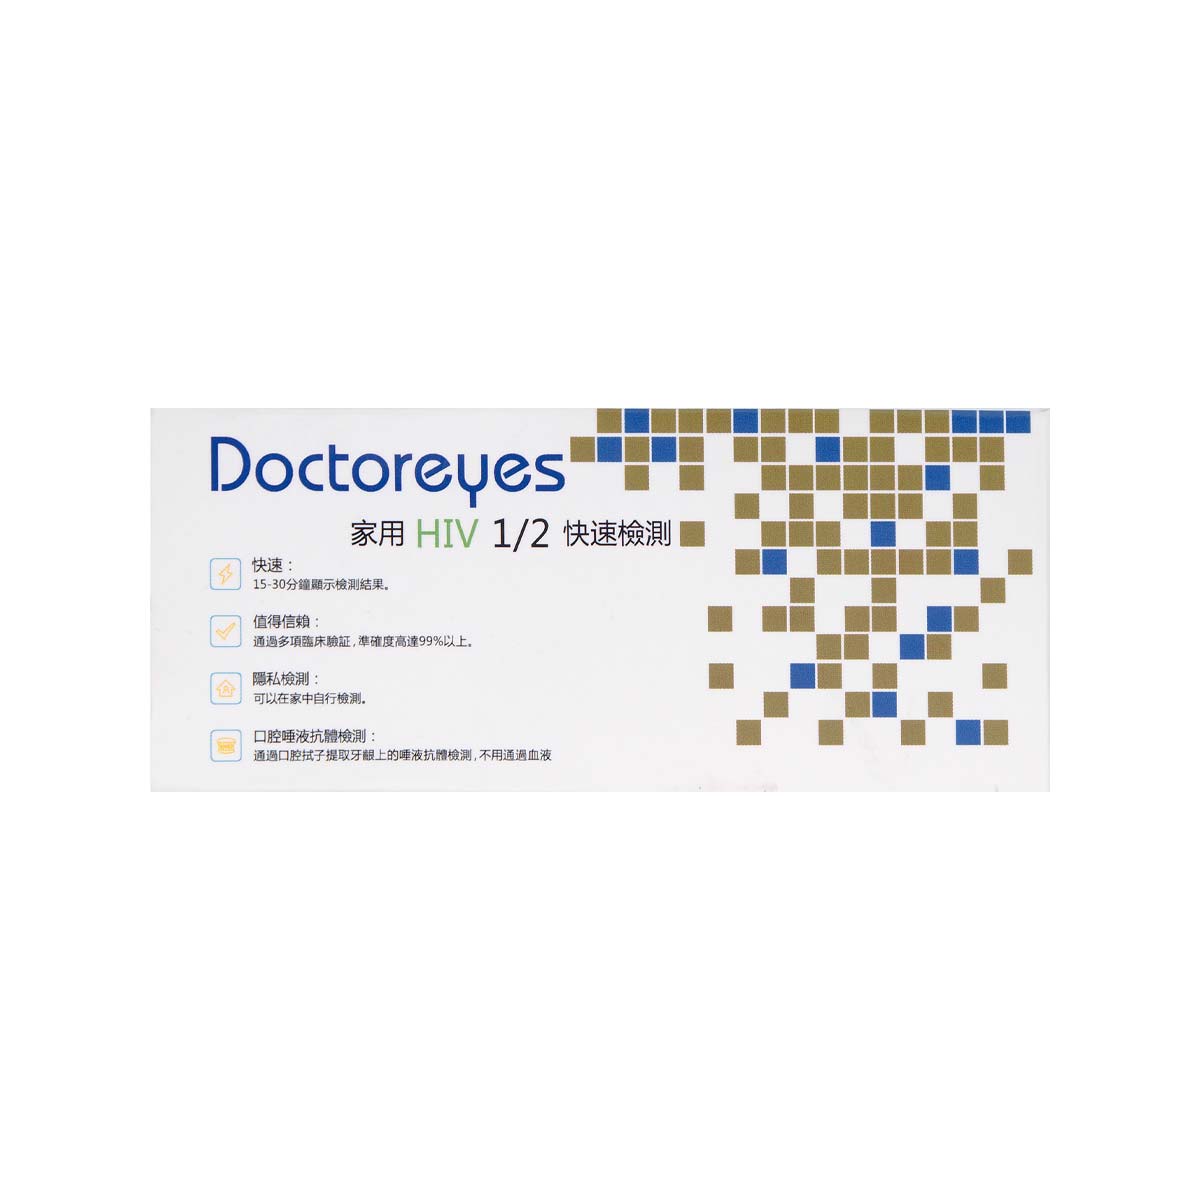 Doctoreyes Oral HIV Test Kit-p_2